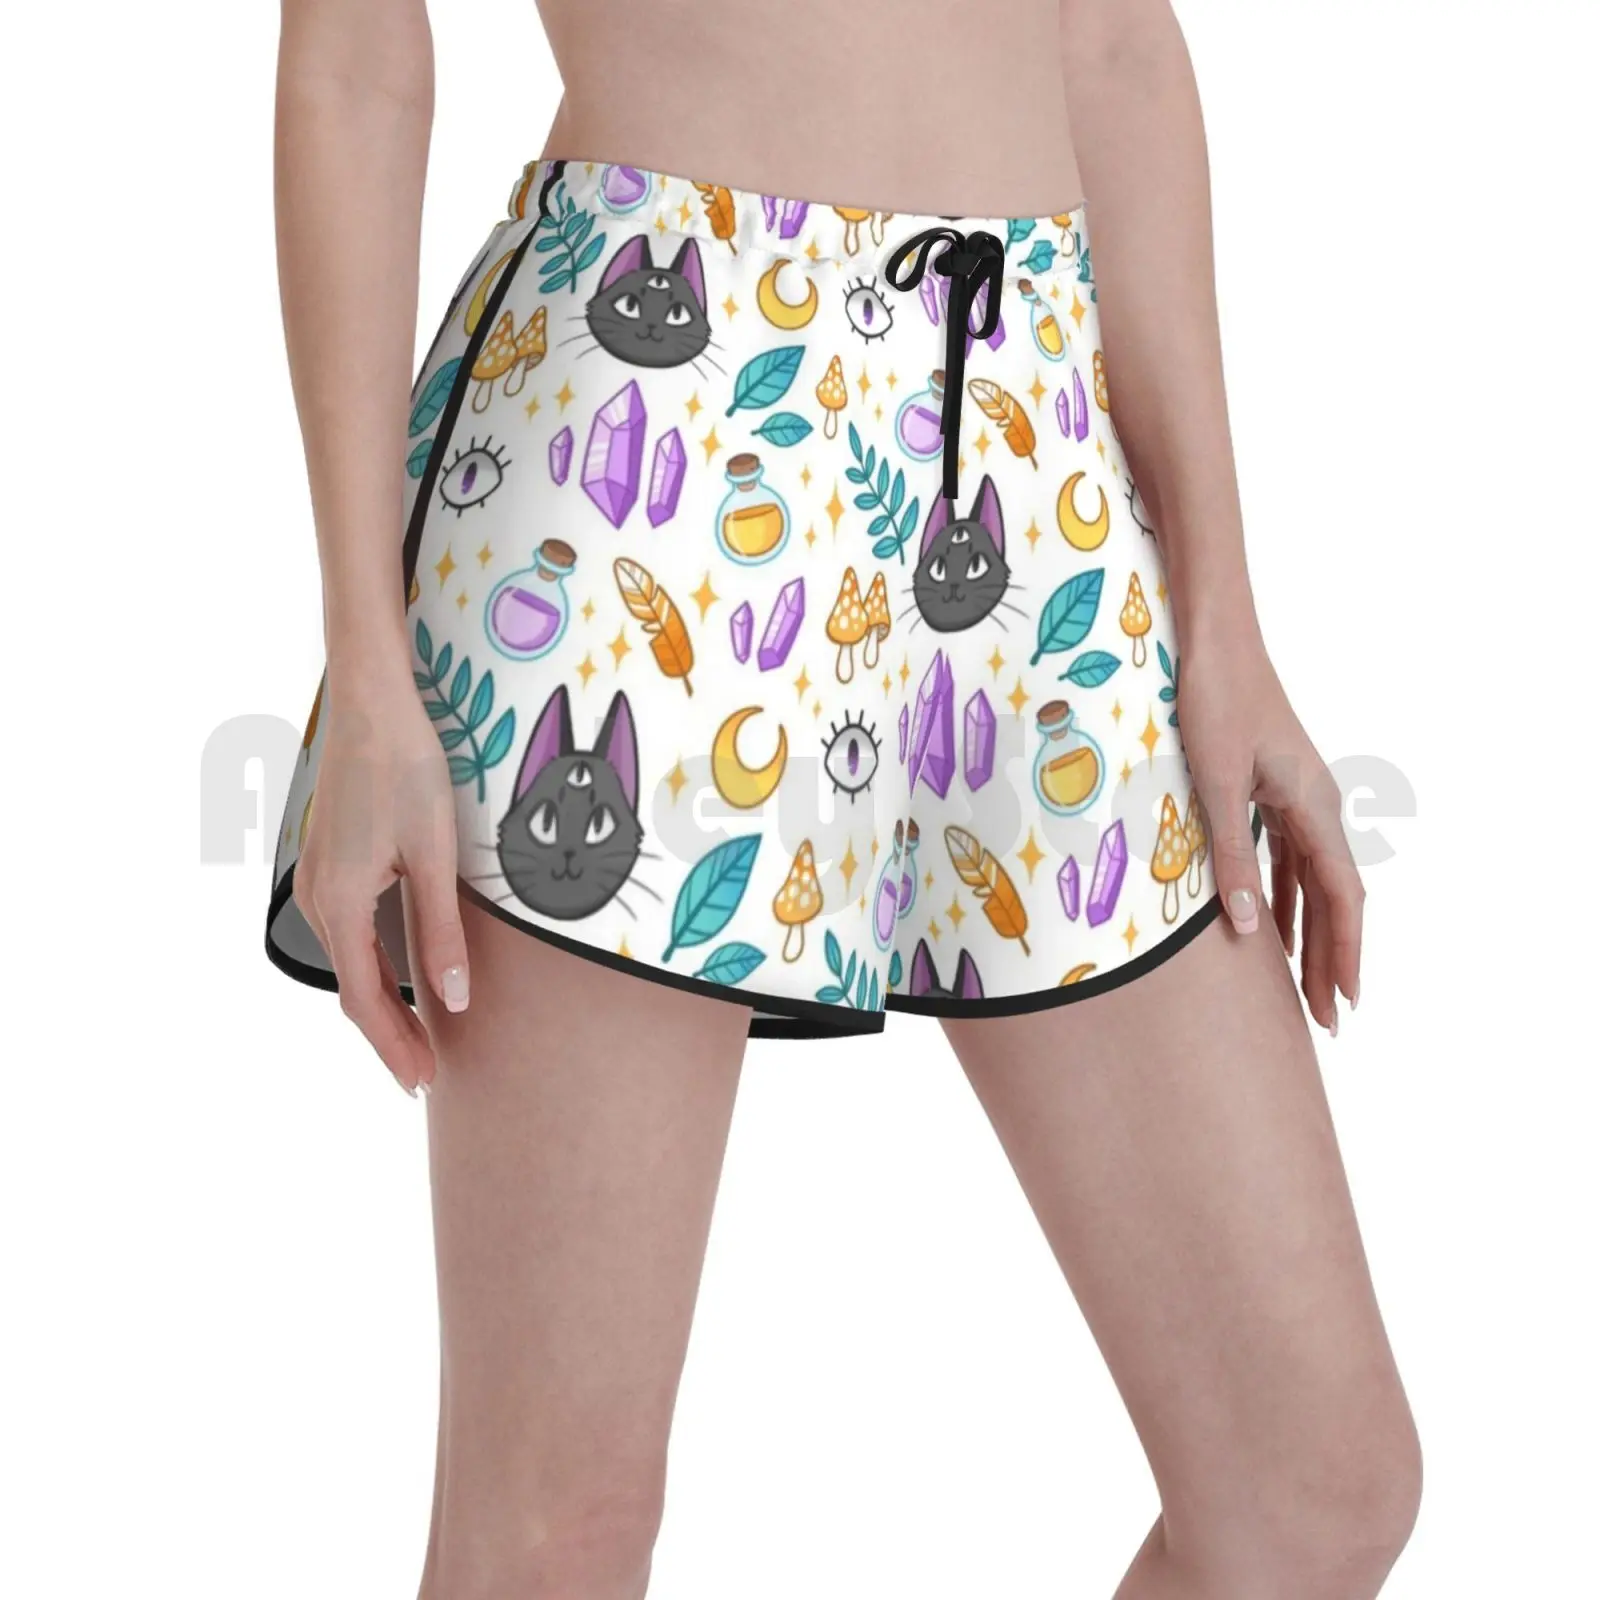 

Женские пляжные шорты для плавания Witchy Cat, пляжные шорты ведьмы, ведьма, кот, луна, полумесяц, кристалл, грибы, звезды, жуткий знакомый глаз